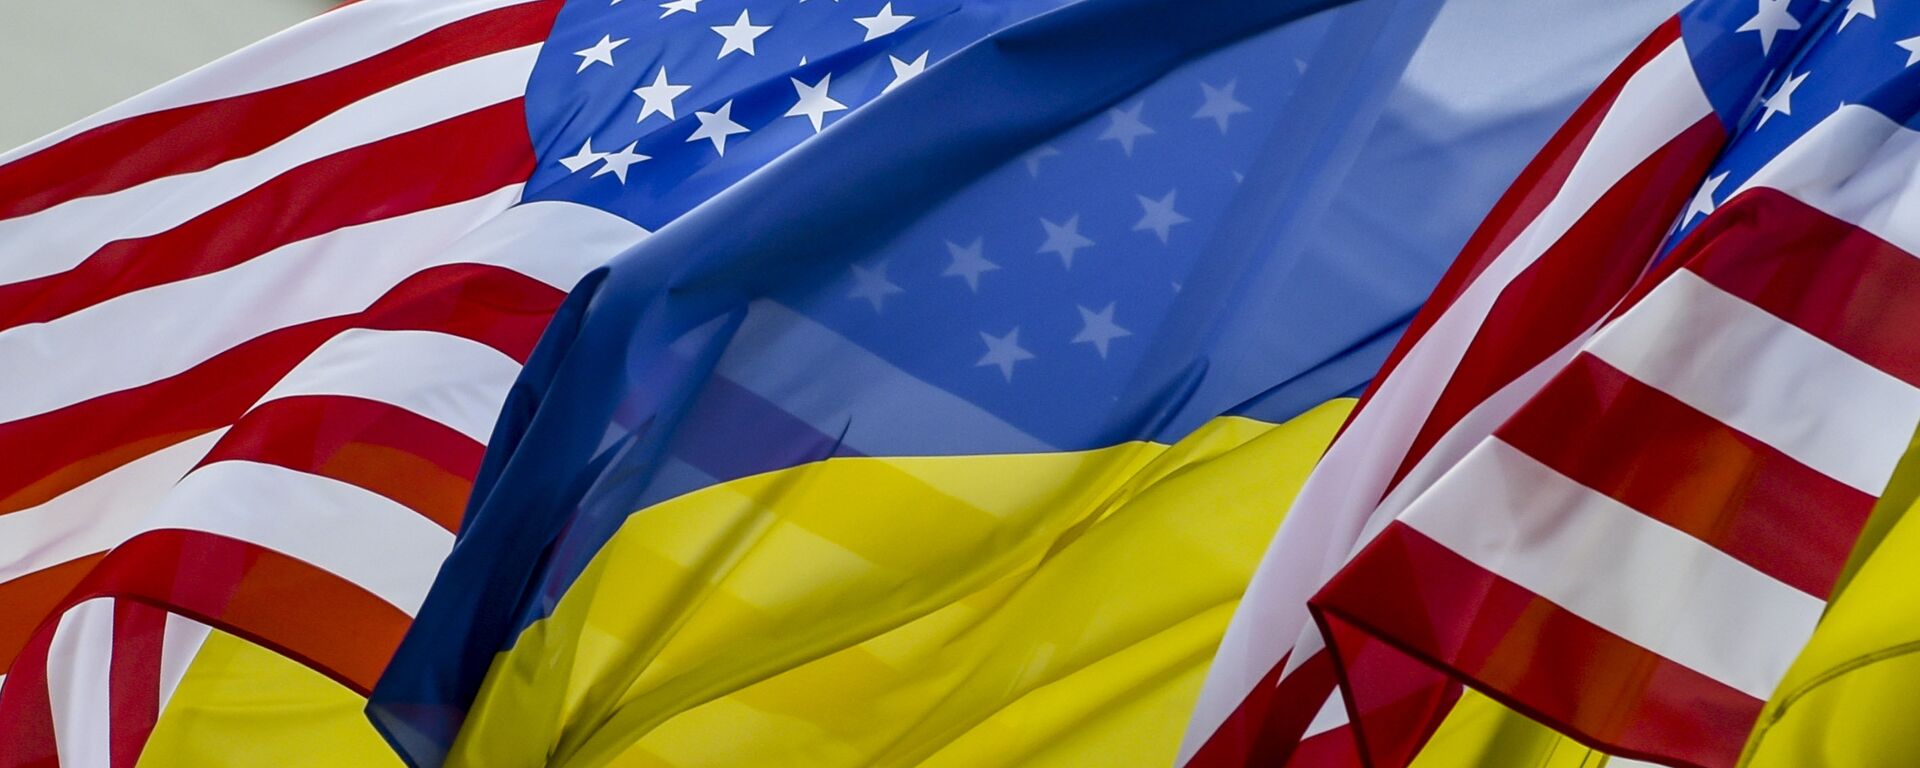 Флаги США и Украины - Sputnik Латвия, 1920, 22.03.2017